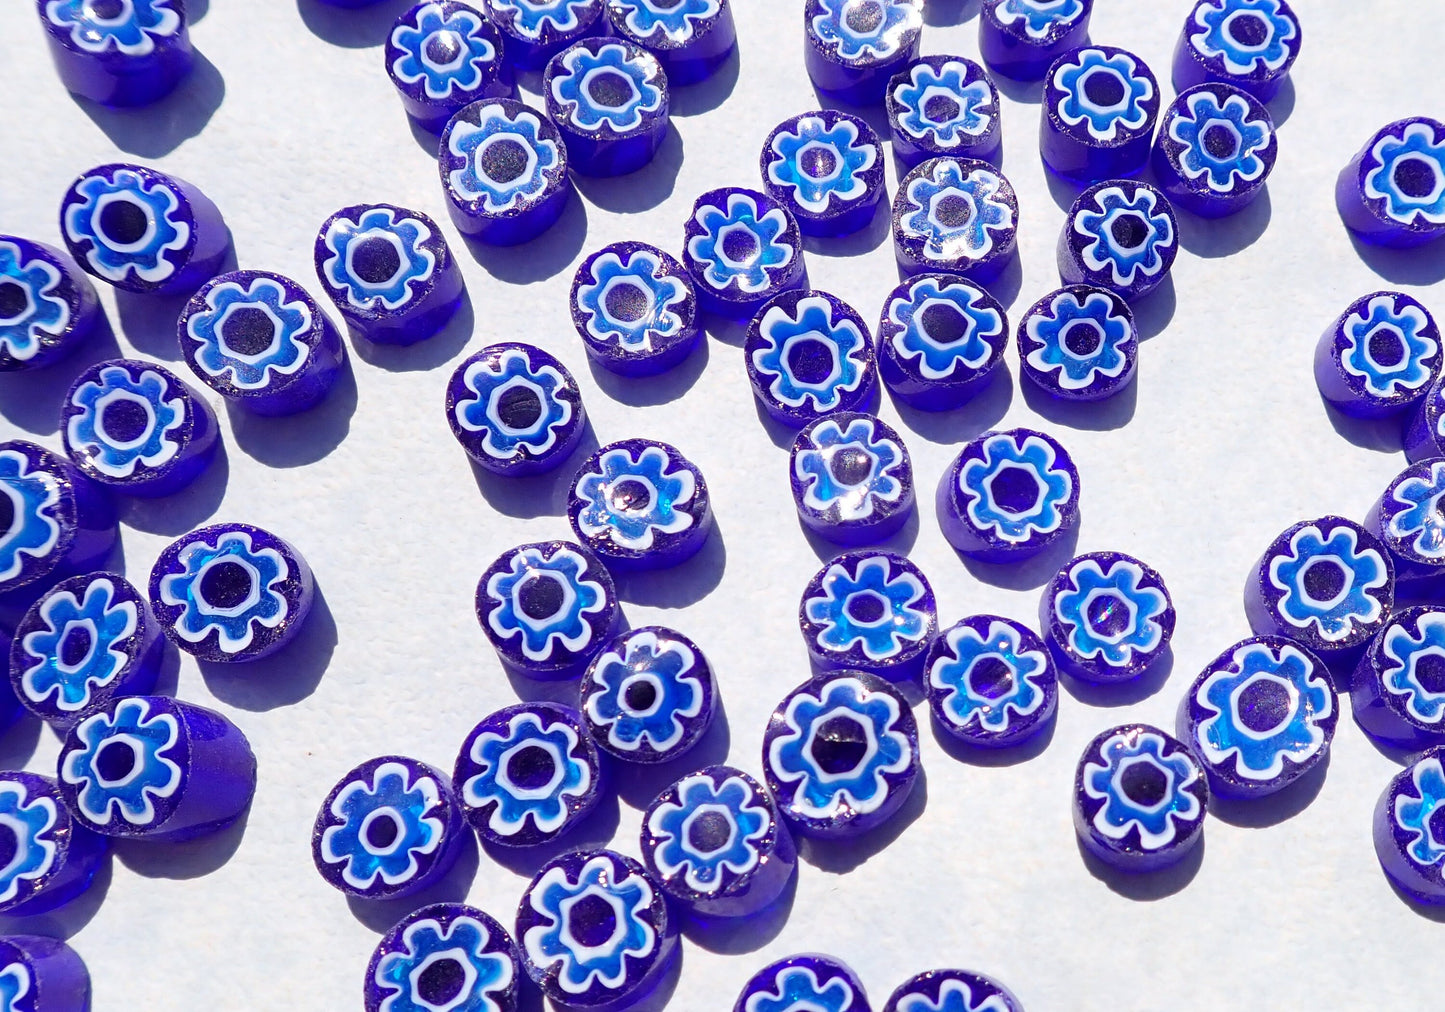 Light Blue Flowers in Deep Blue Millefiori - 25 grams - Unique Mosaic Glass Tiles - Floral Pattern